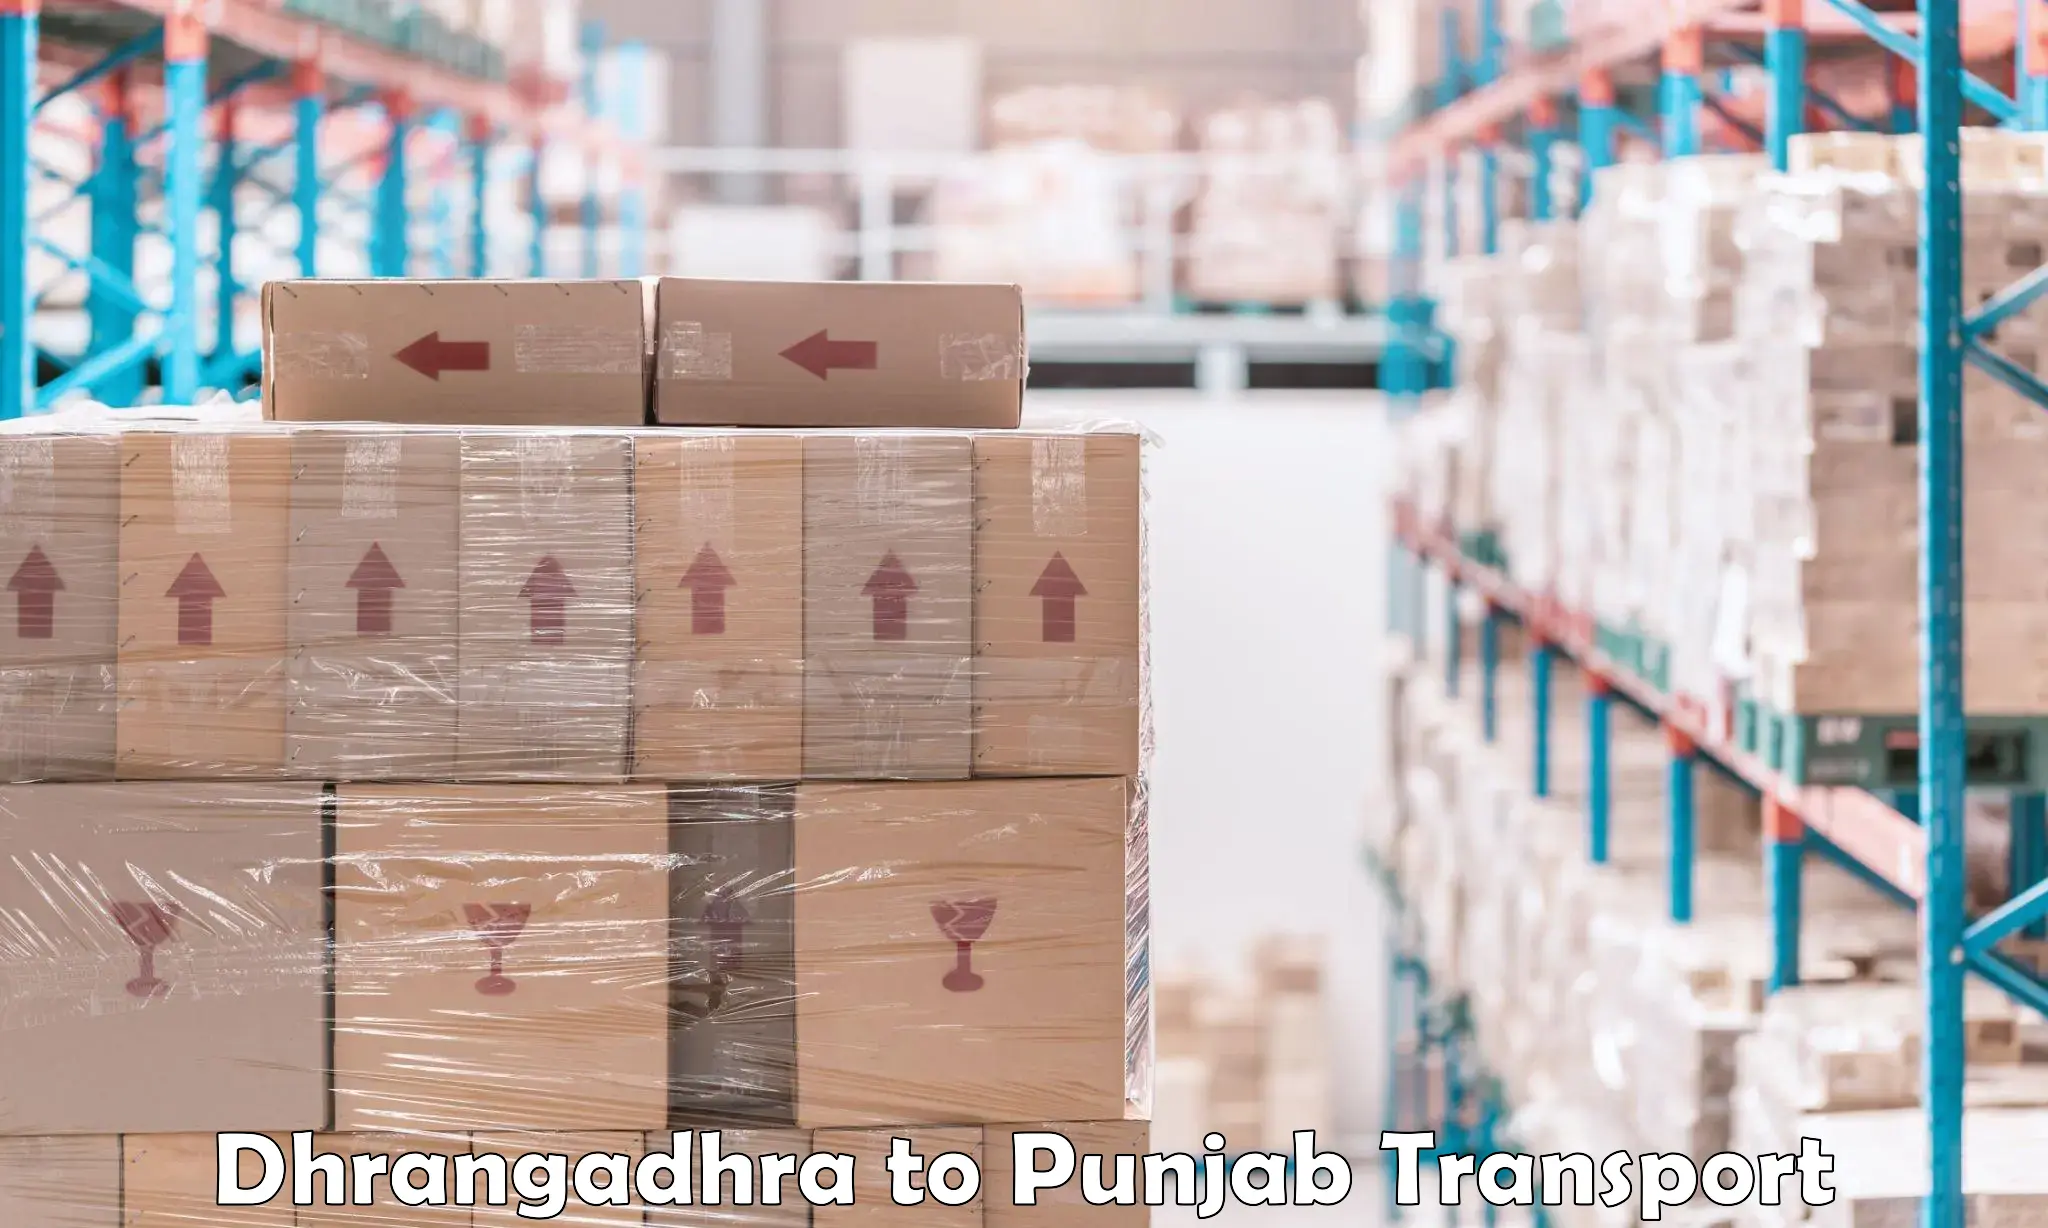 Land transport services Dhrangadhra to Punjab